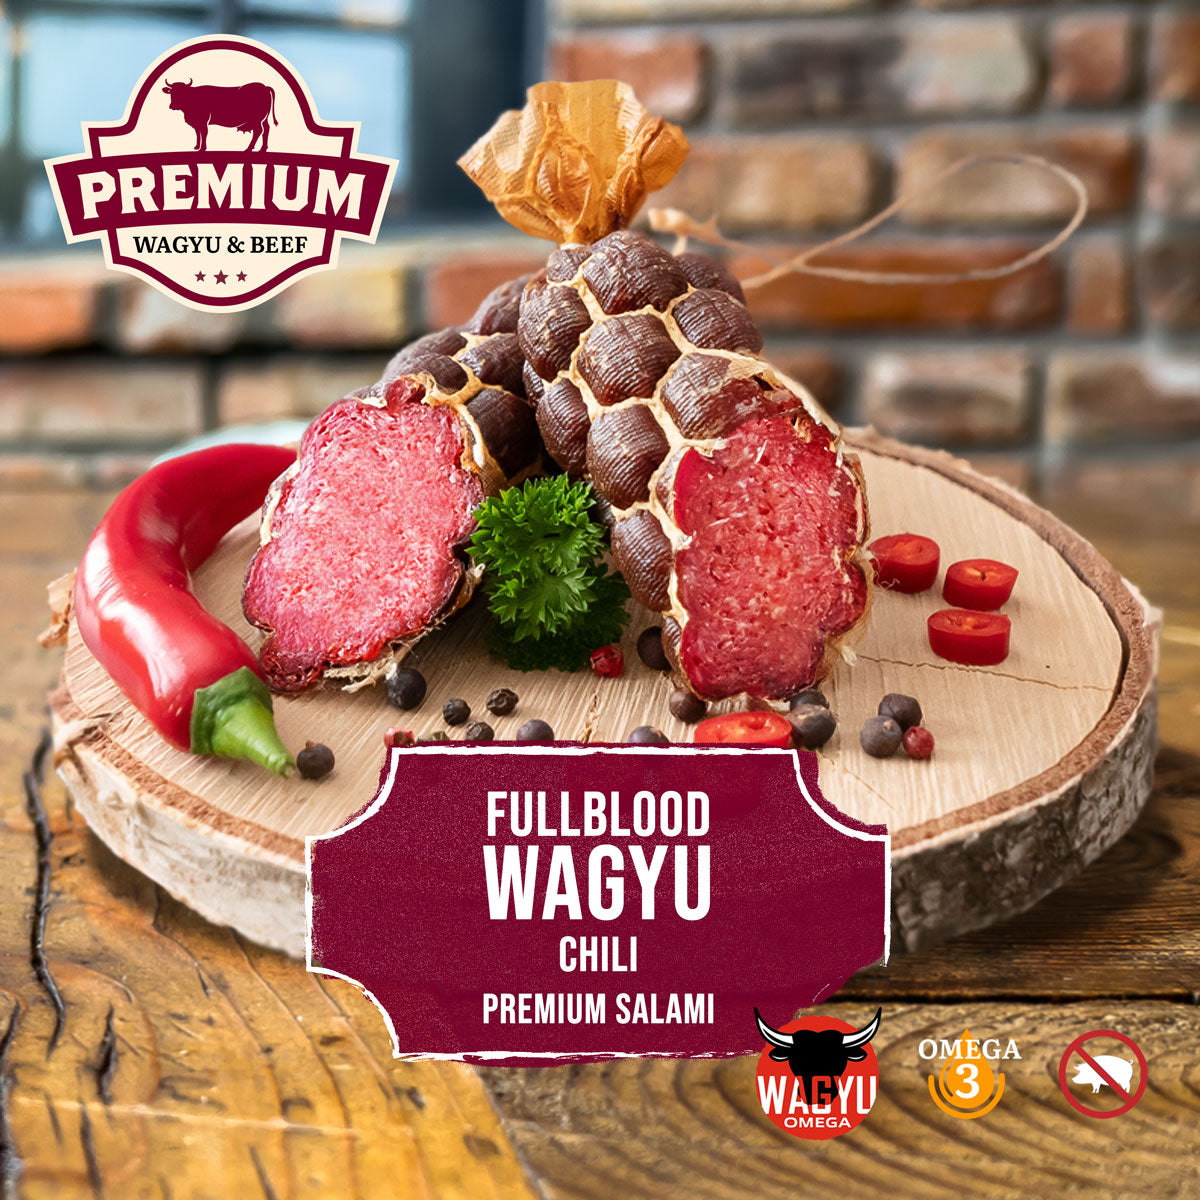 Fullblood Wagyu Chili Premium Salami - Handgefertigte Delikatesse mit intensivem Geschmack und würziger Schärfe.